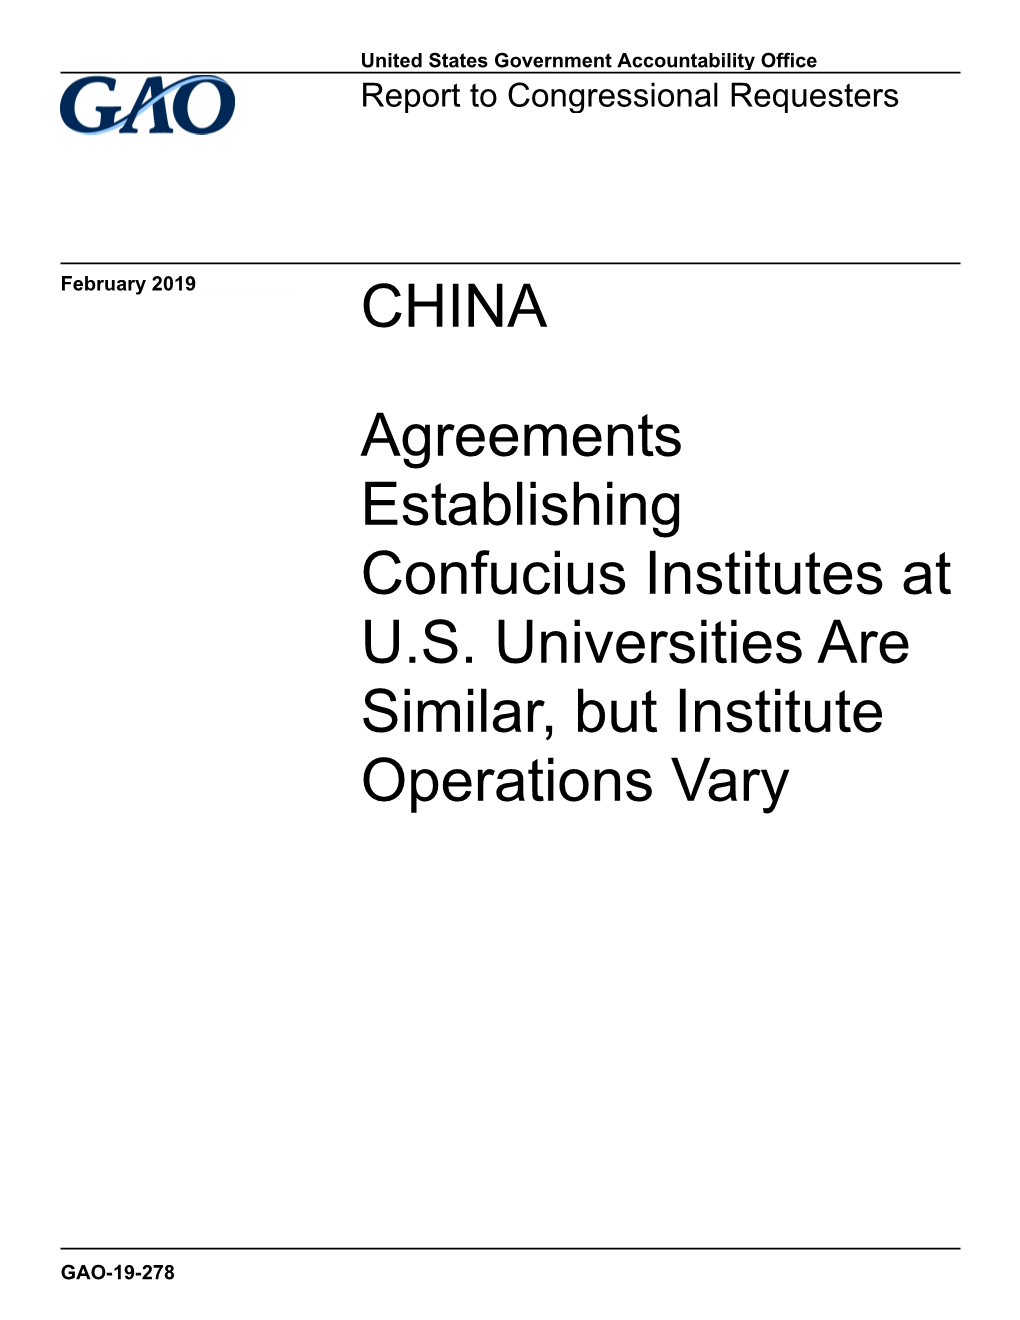 GAO-19-278, CHINA: Agreements Establishing Confucius Institutes At